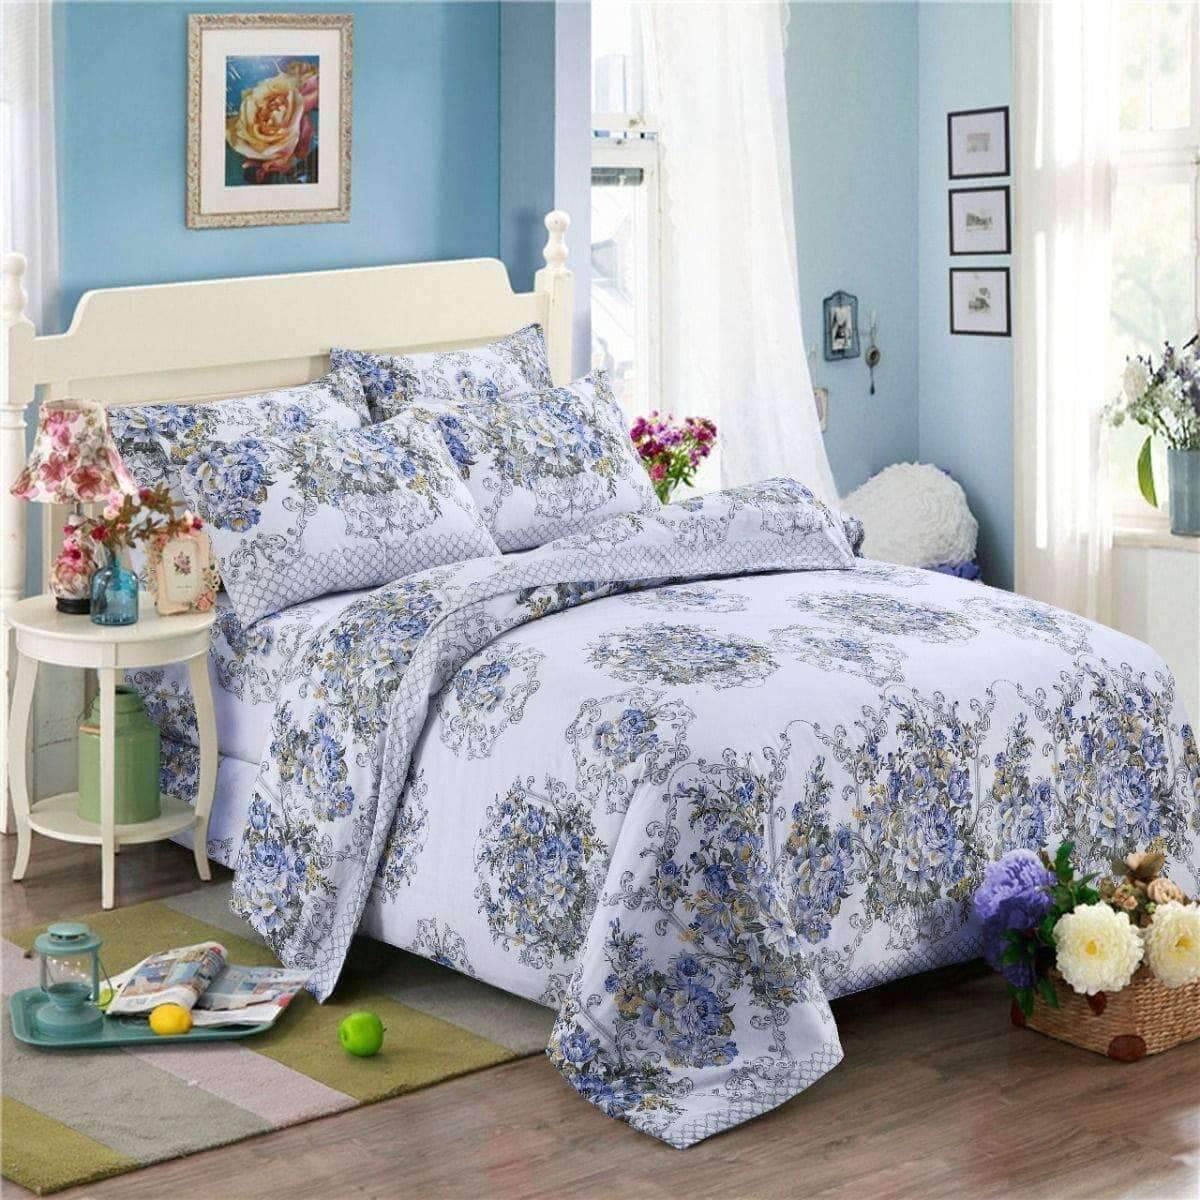   Floral Bedding Sets